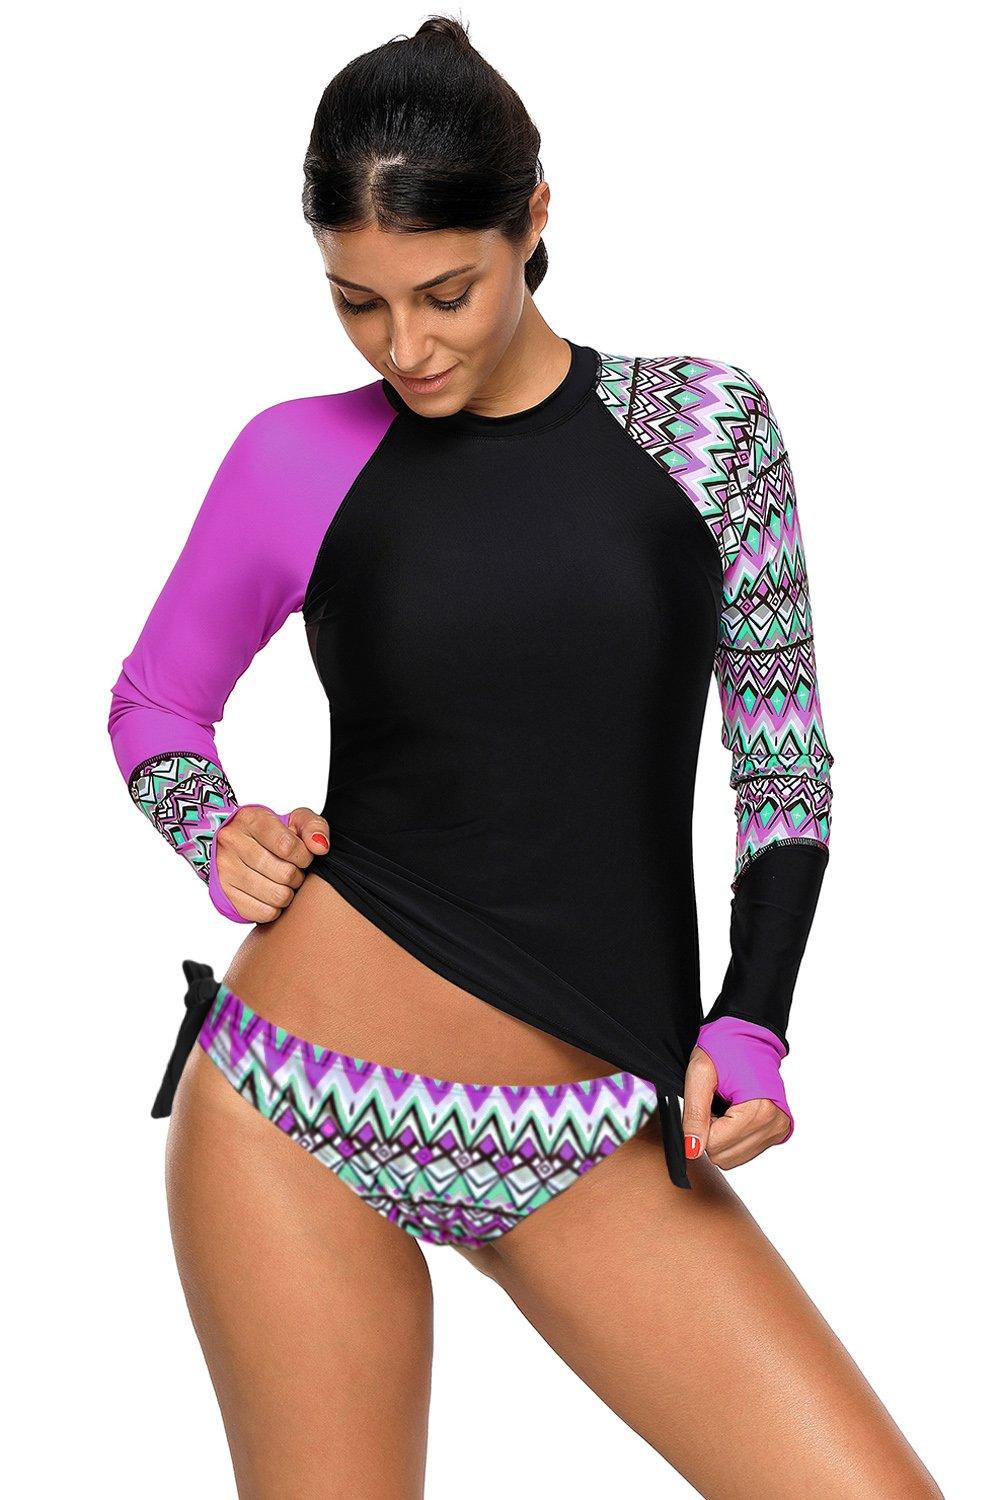 KaleaBoutique Long Sleeve Purple UV Sun Protection UPF 50+ Rash Guard Top 2 Piece Swimsuit Set - KaleaBoutique.com